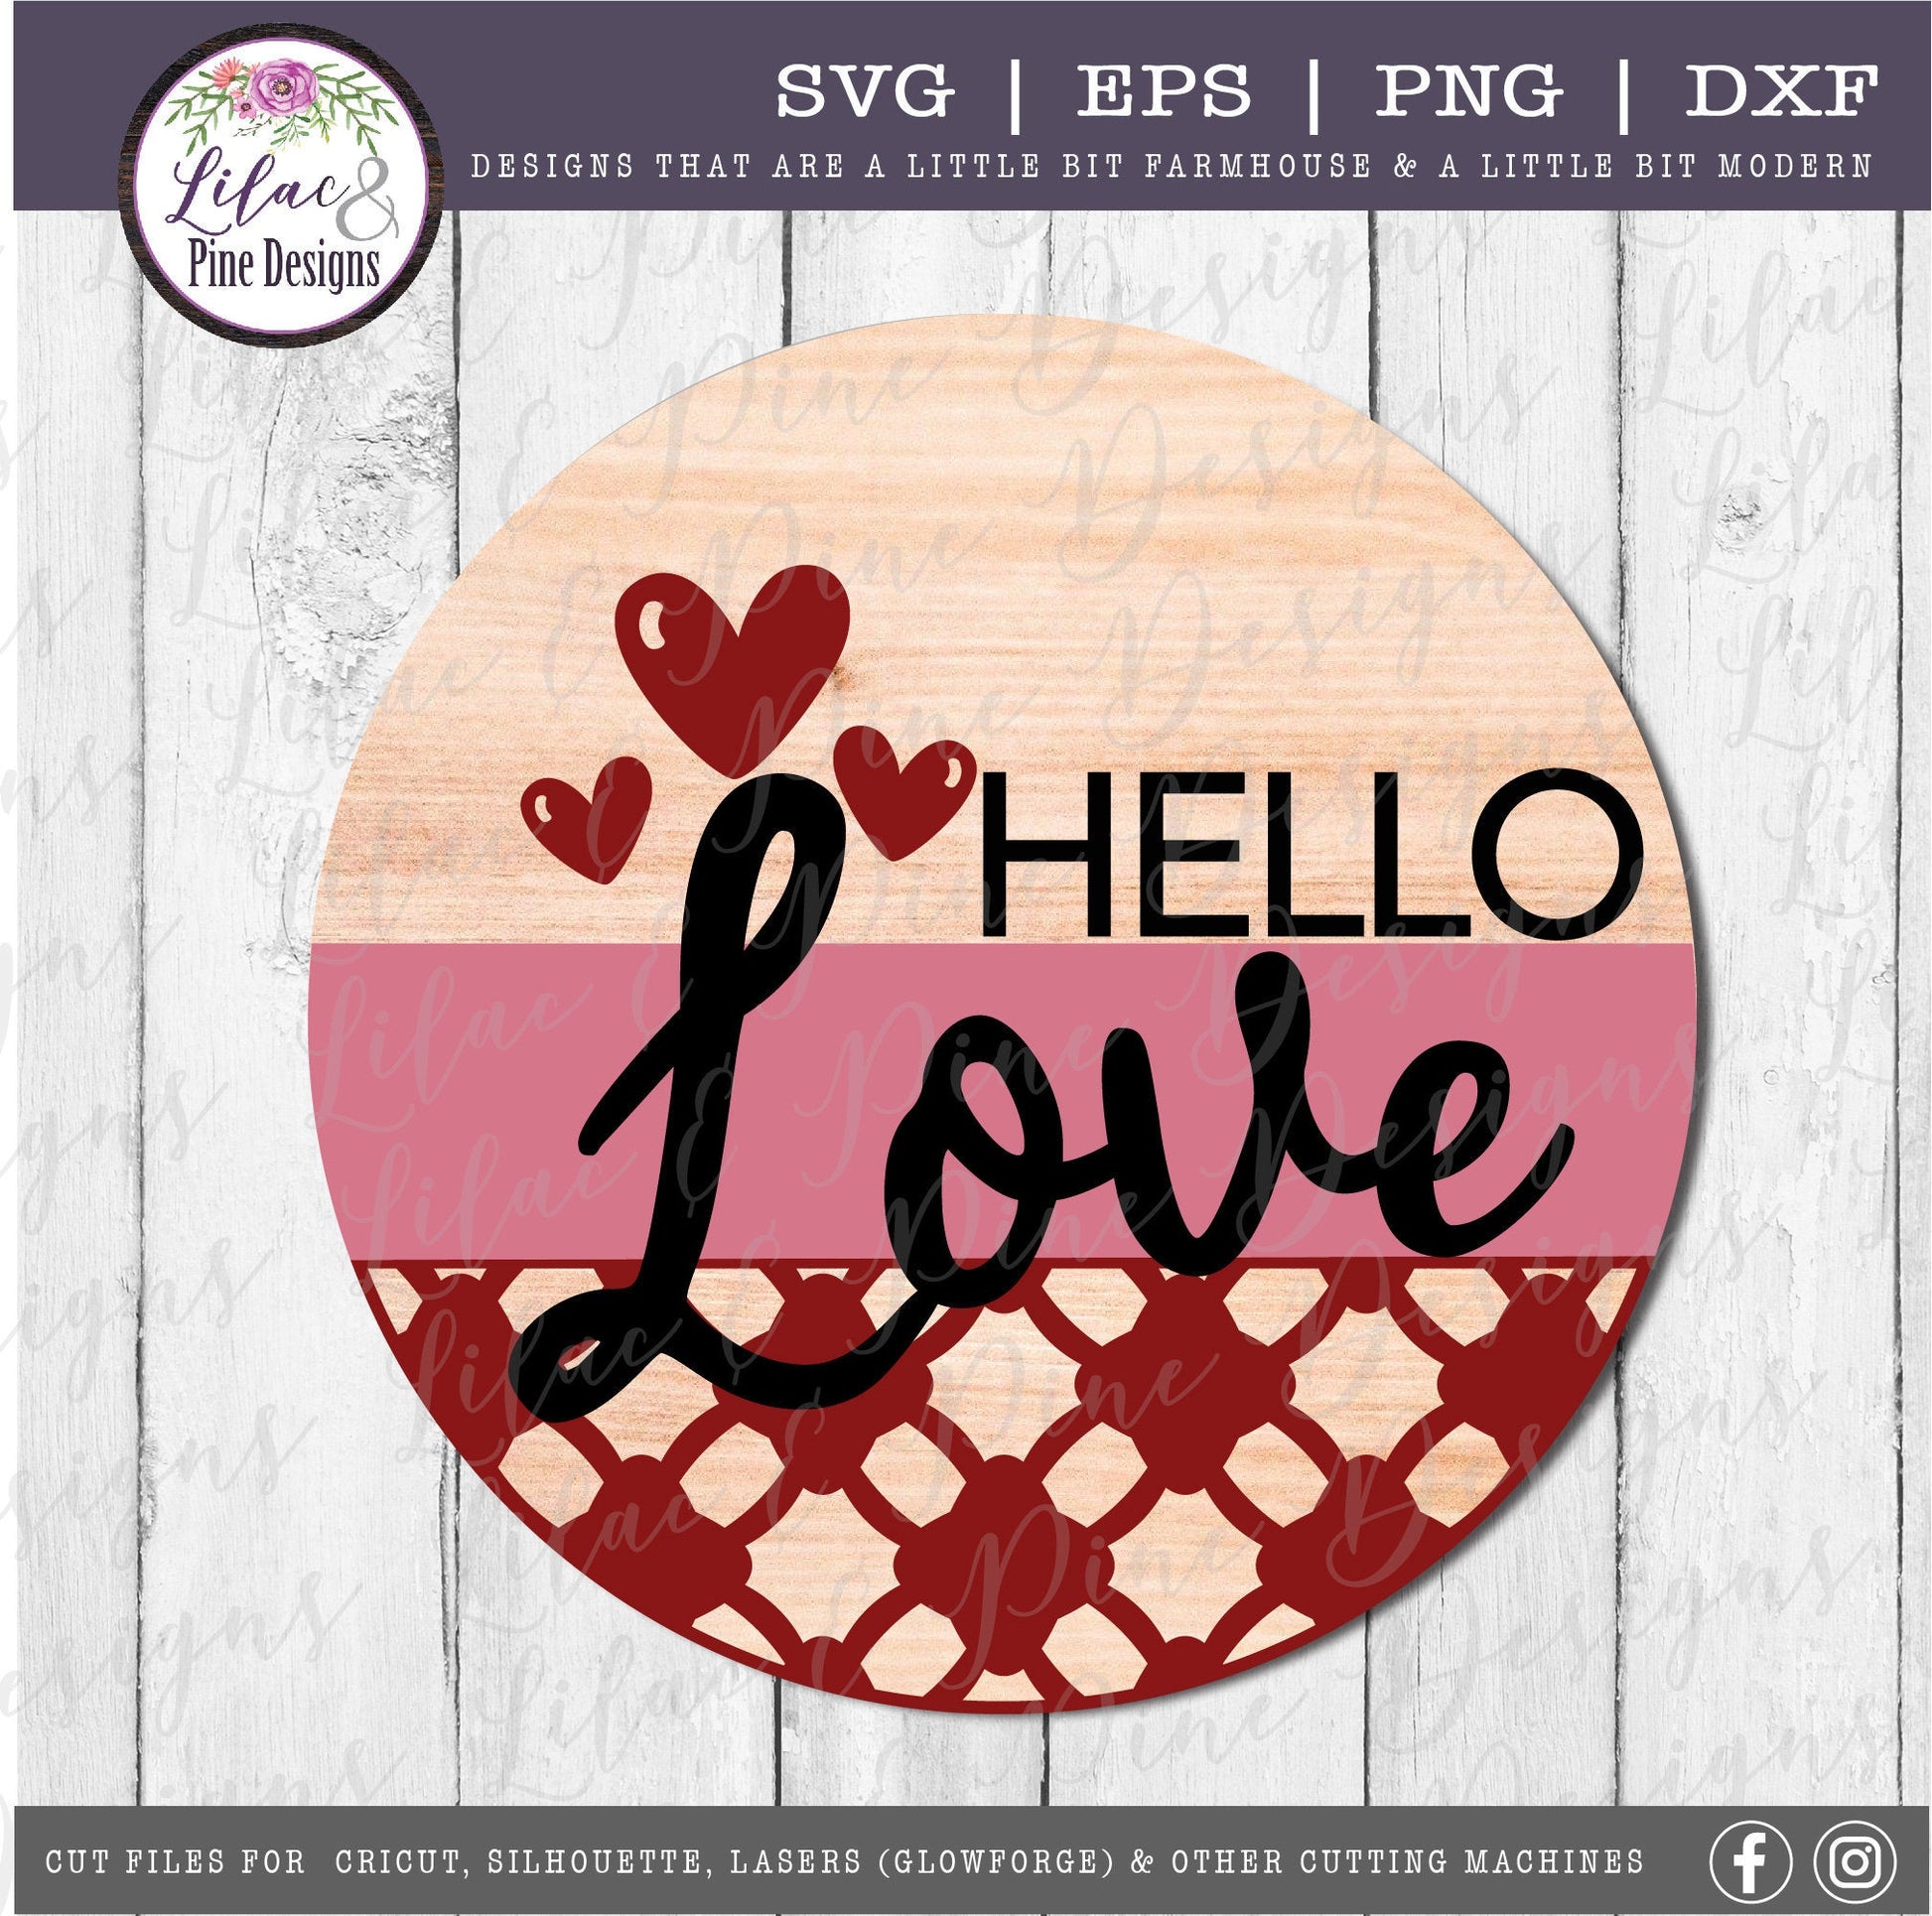 Hello Love Valentine SVG, Valentine door round SVG,  patterned heart Valentine door sign SVG, Valentine decor, Glowforge Svg, laser cut file